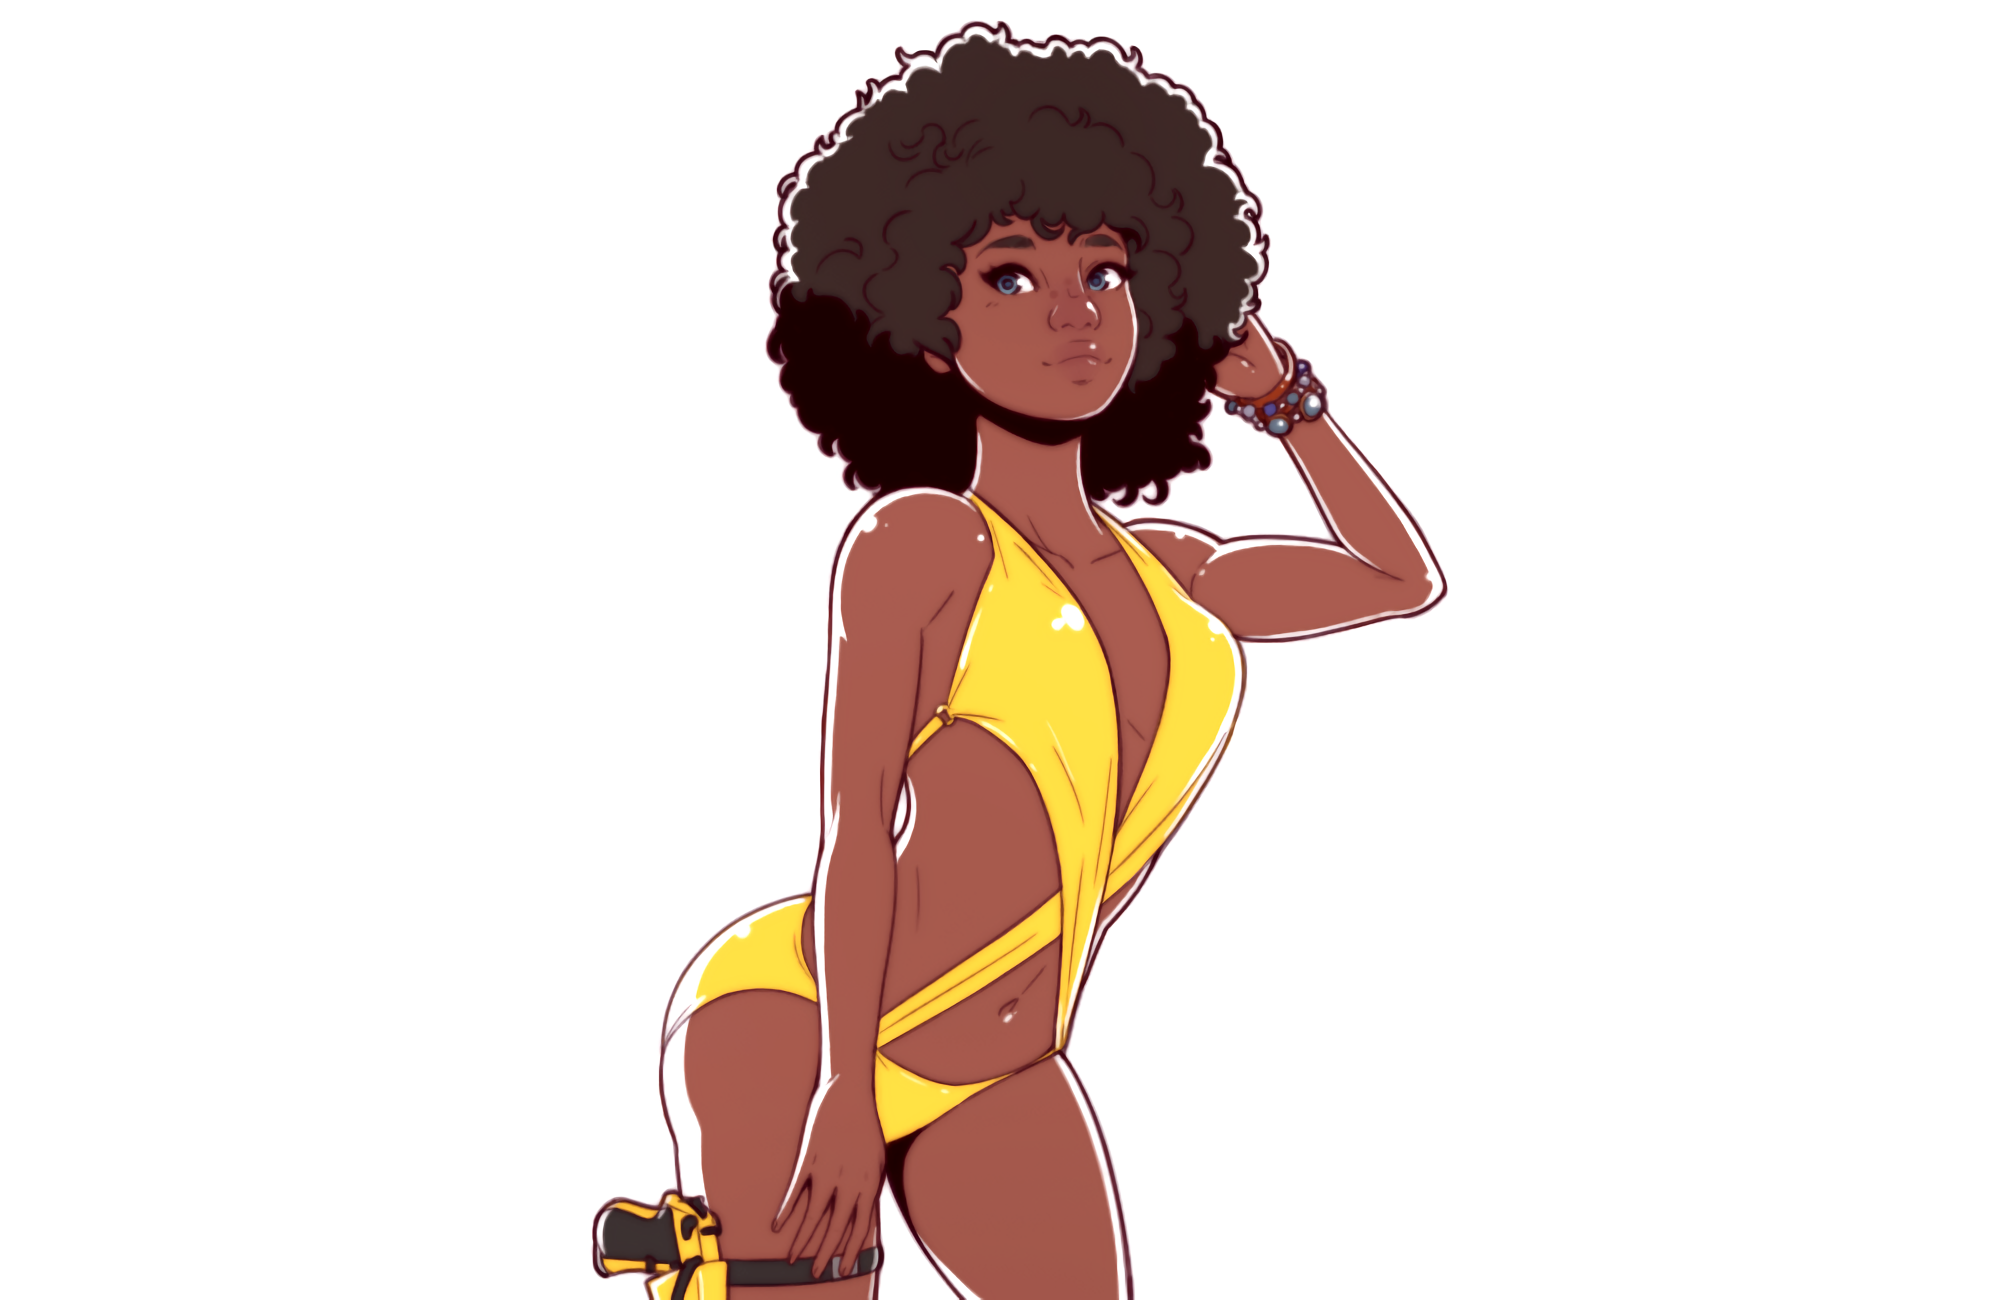 General 2000x1300 women digital art Vanilla Cookies (comic) ebony women Afro Yellow Swimsuit bikini girls with guns dark skin Dave Cheung minimalism simple background white background